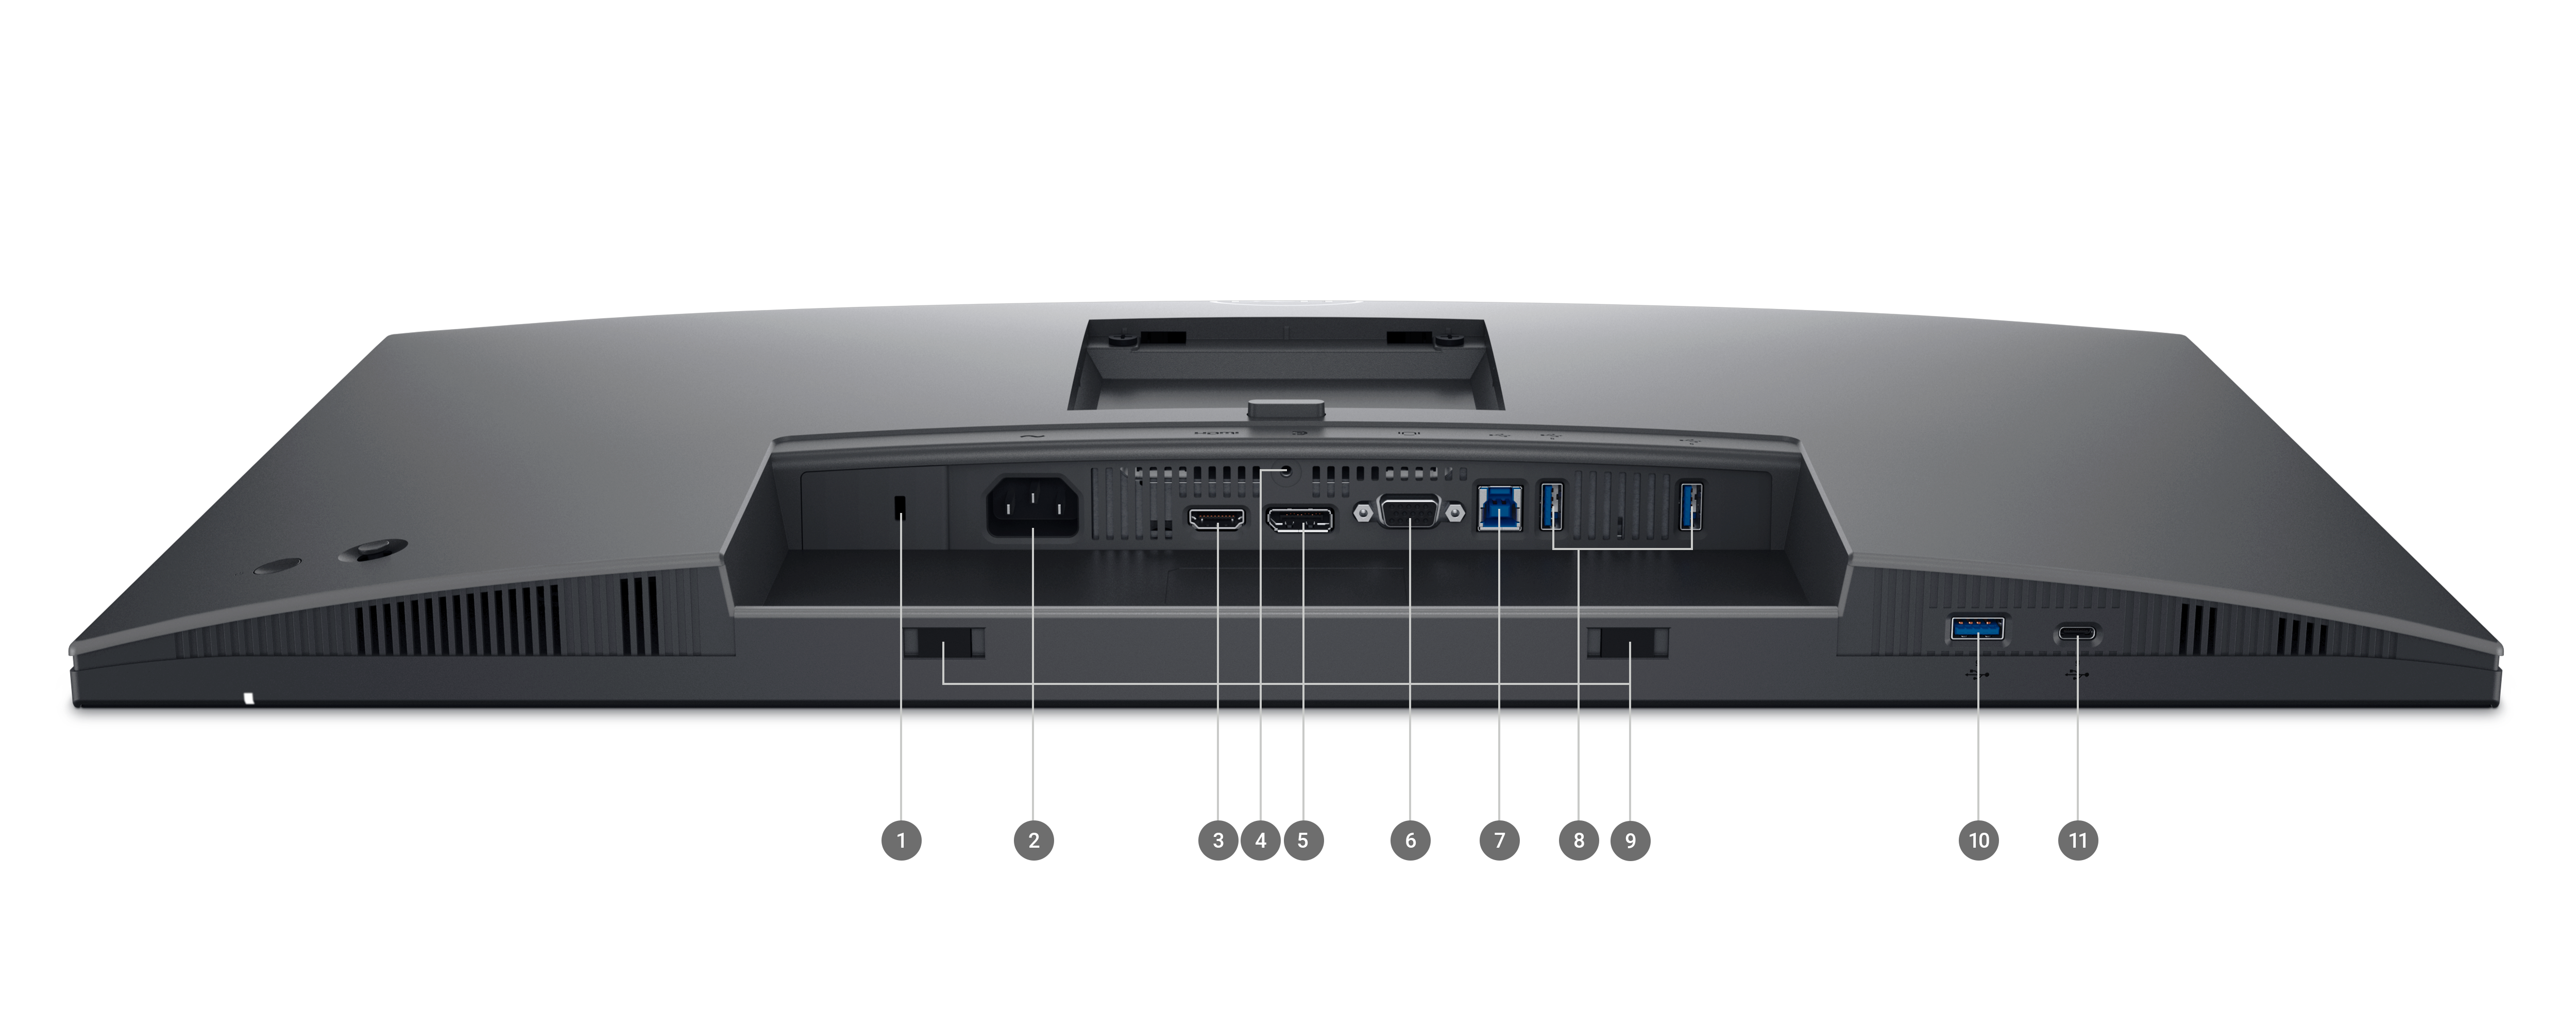 Moniteur Dell 2725H de la gamme P placé l’écran vers le bas avec des numéros de 1 à 11 qui indiquent l’emplacement des ports et des logements du produit.